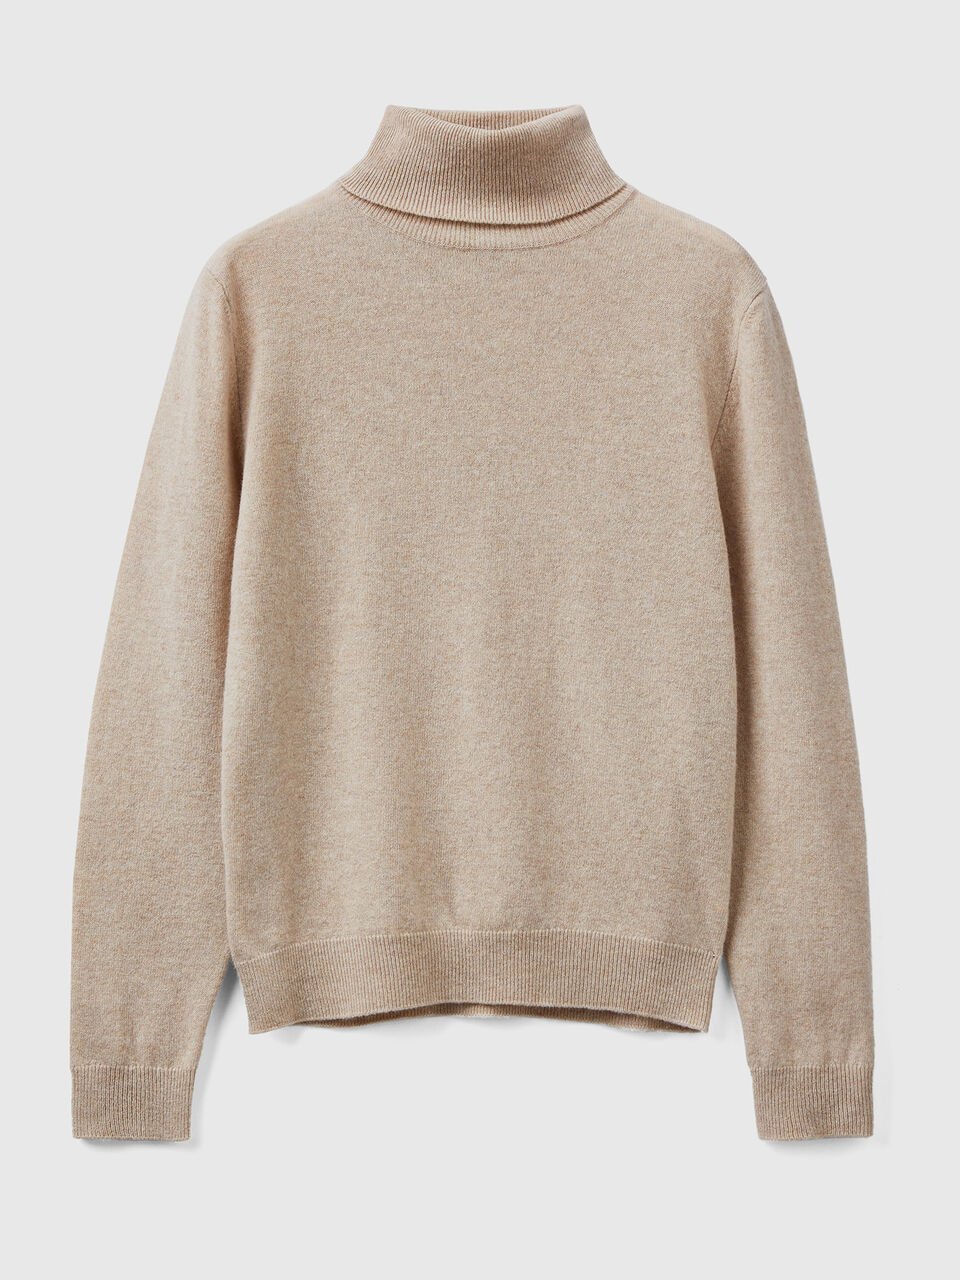 Beige turtleneck sweater in pure Merino wool - Beige